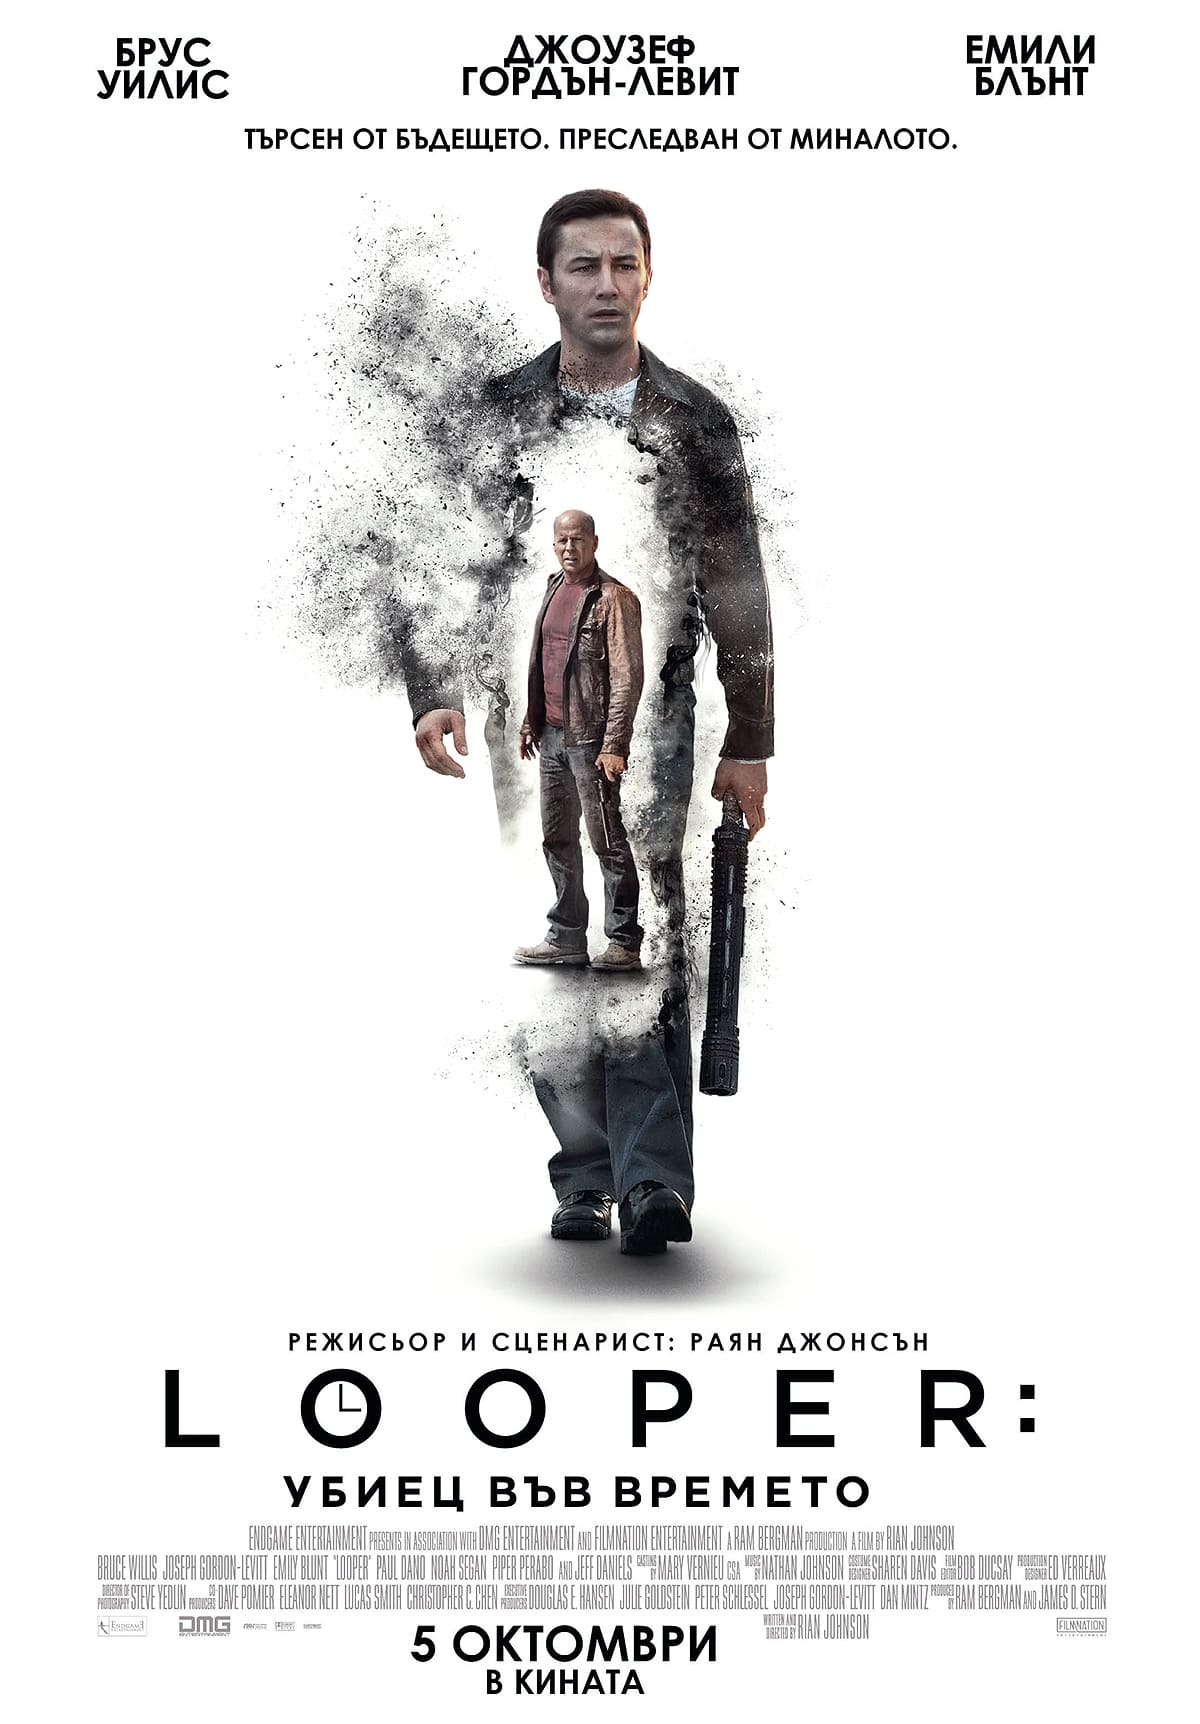 Looper: Убиец във времето